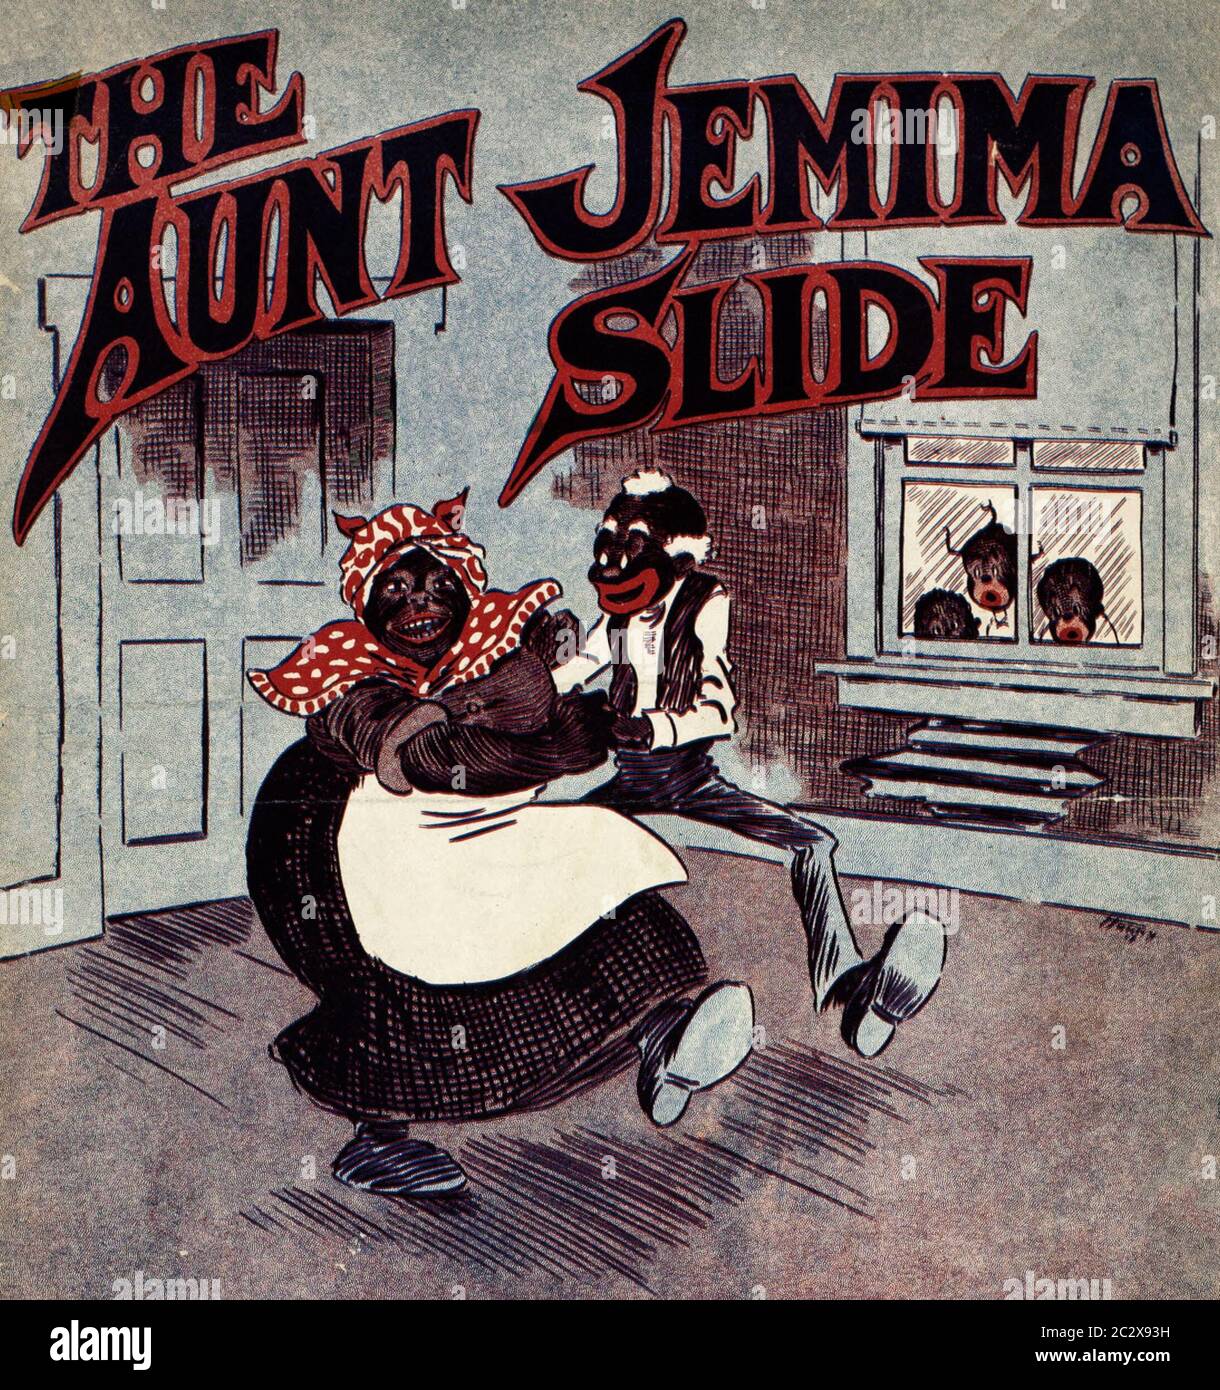 Lithographie, die Tante Jemima und einen Mann zeigt, der in einem Raum eines Hauses tanzt, während Kinder mit schockierten Ausdrücken durch ein Fenster hindurchschauen Stockfoto